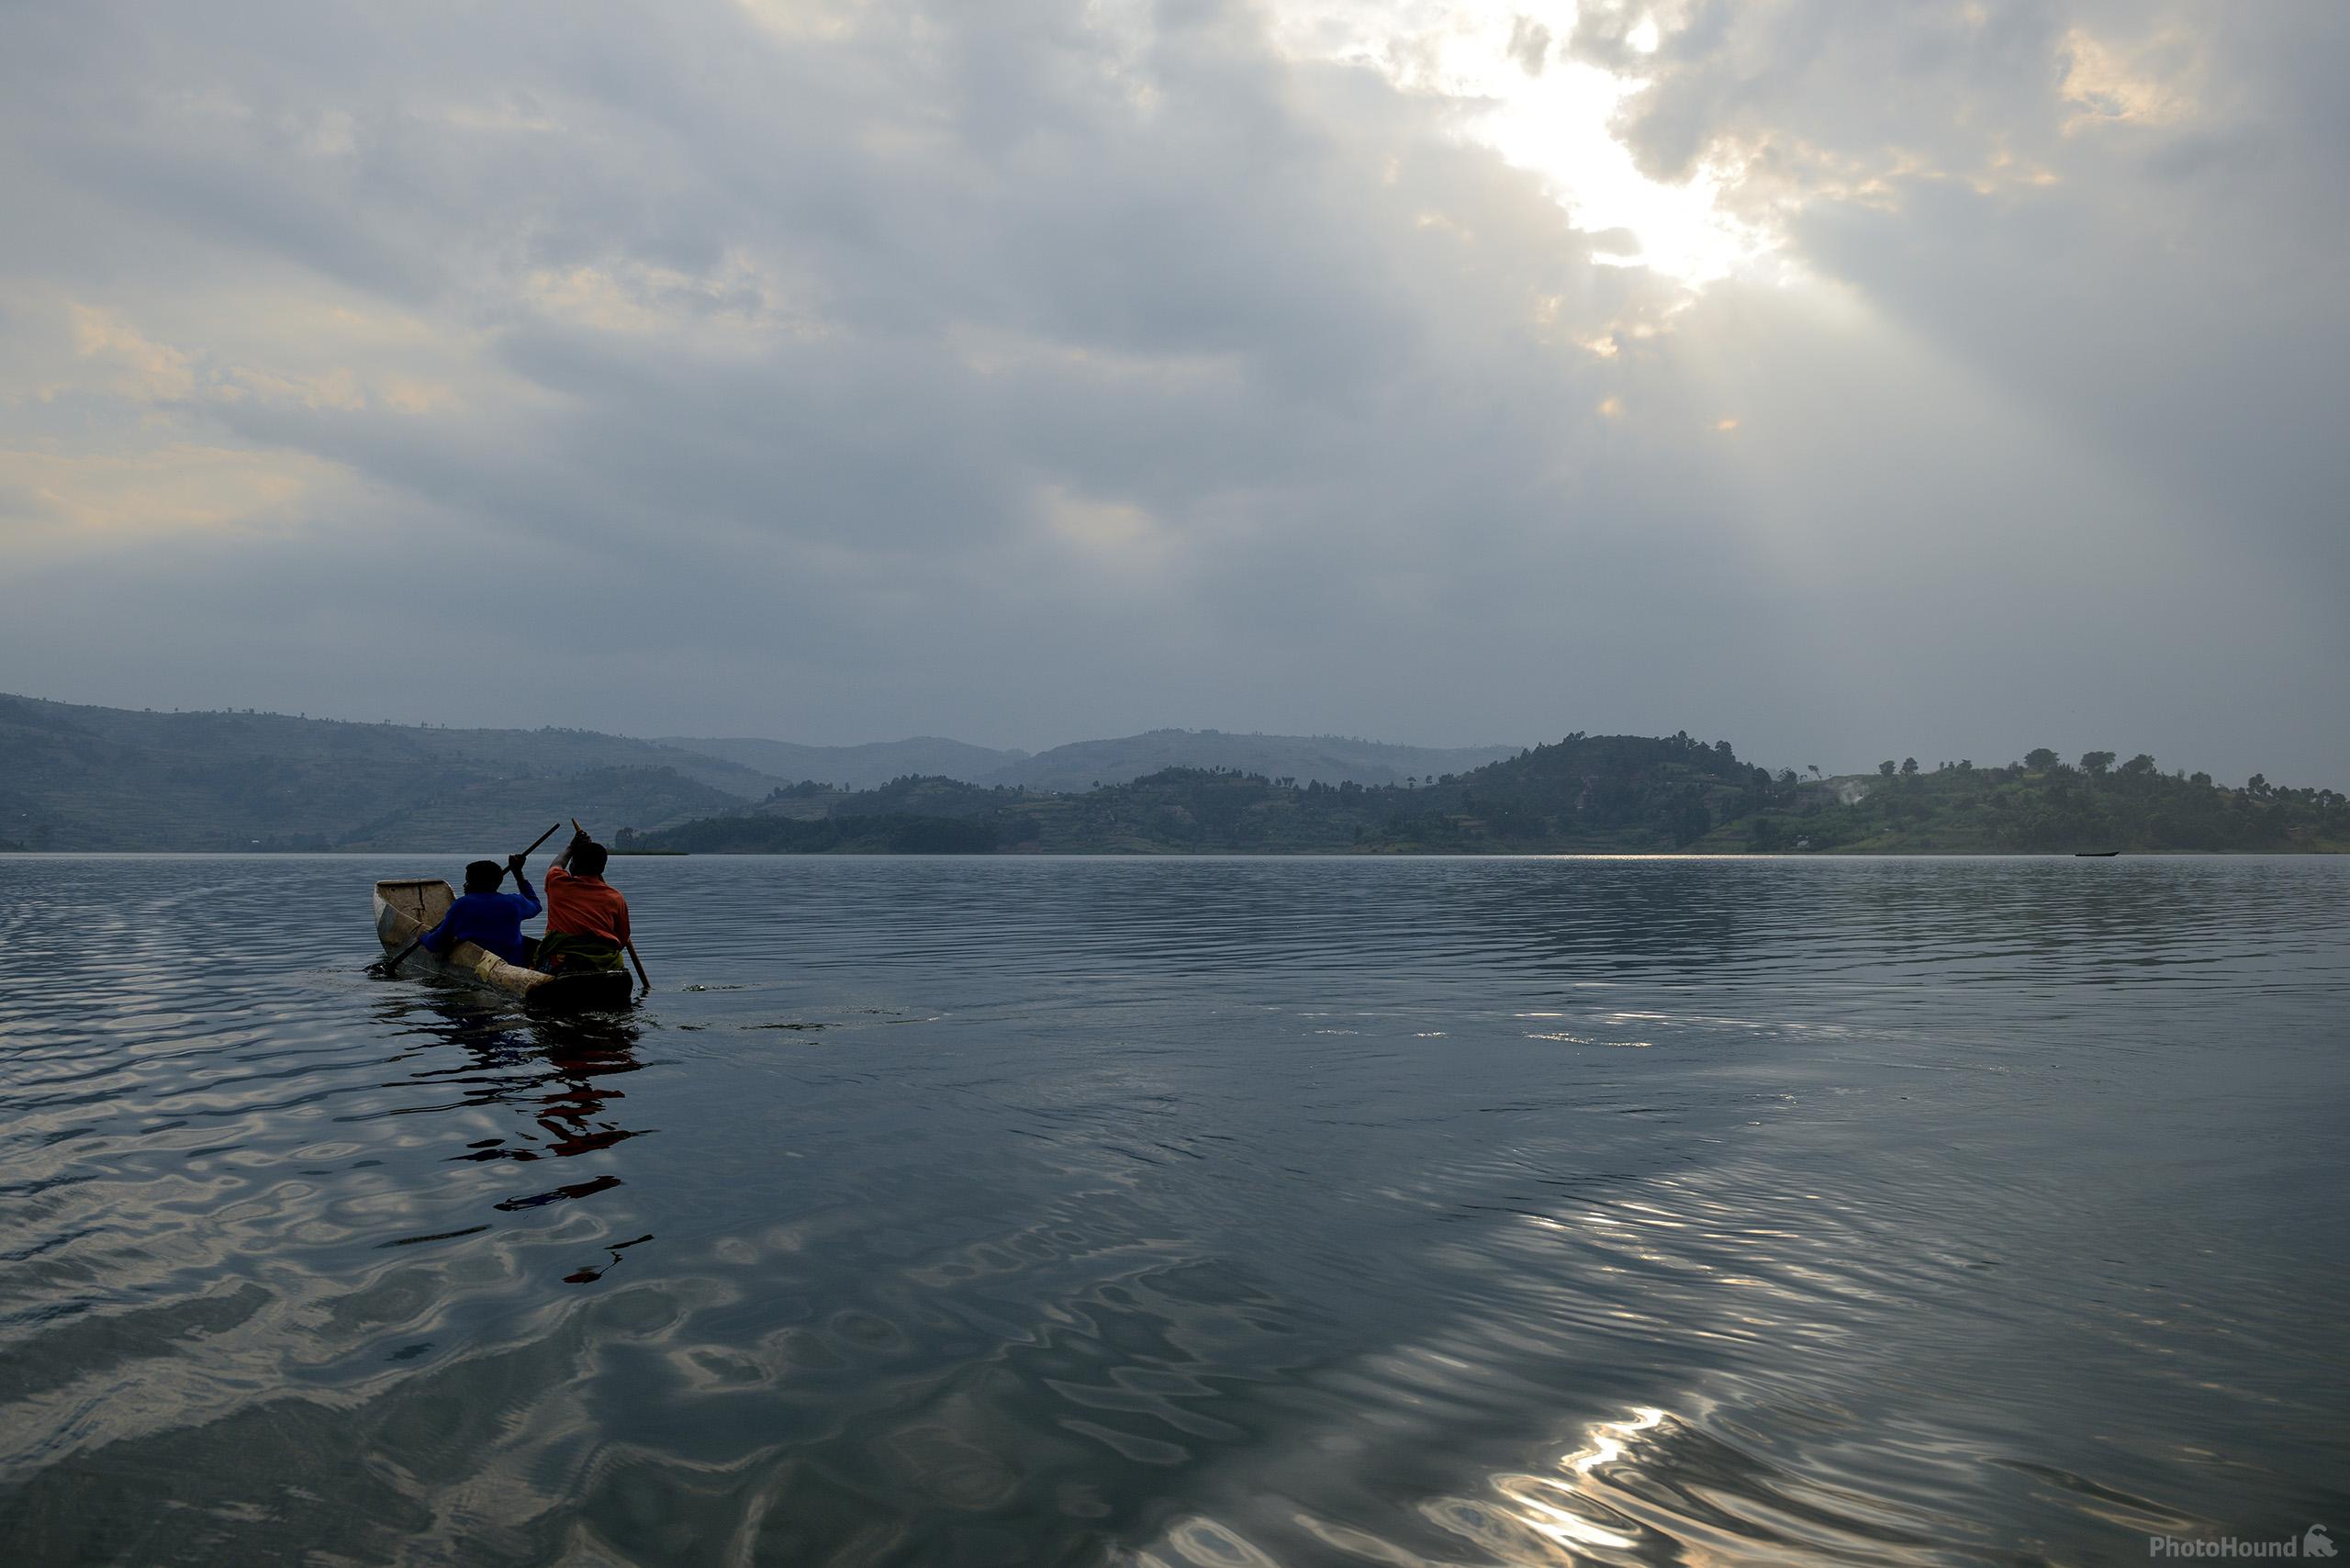 Image of Lake Bunyonyi Canoe Trip by Luka Esenko